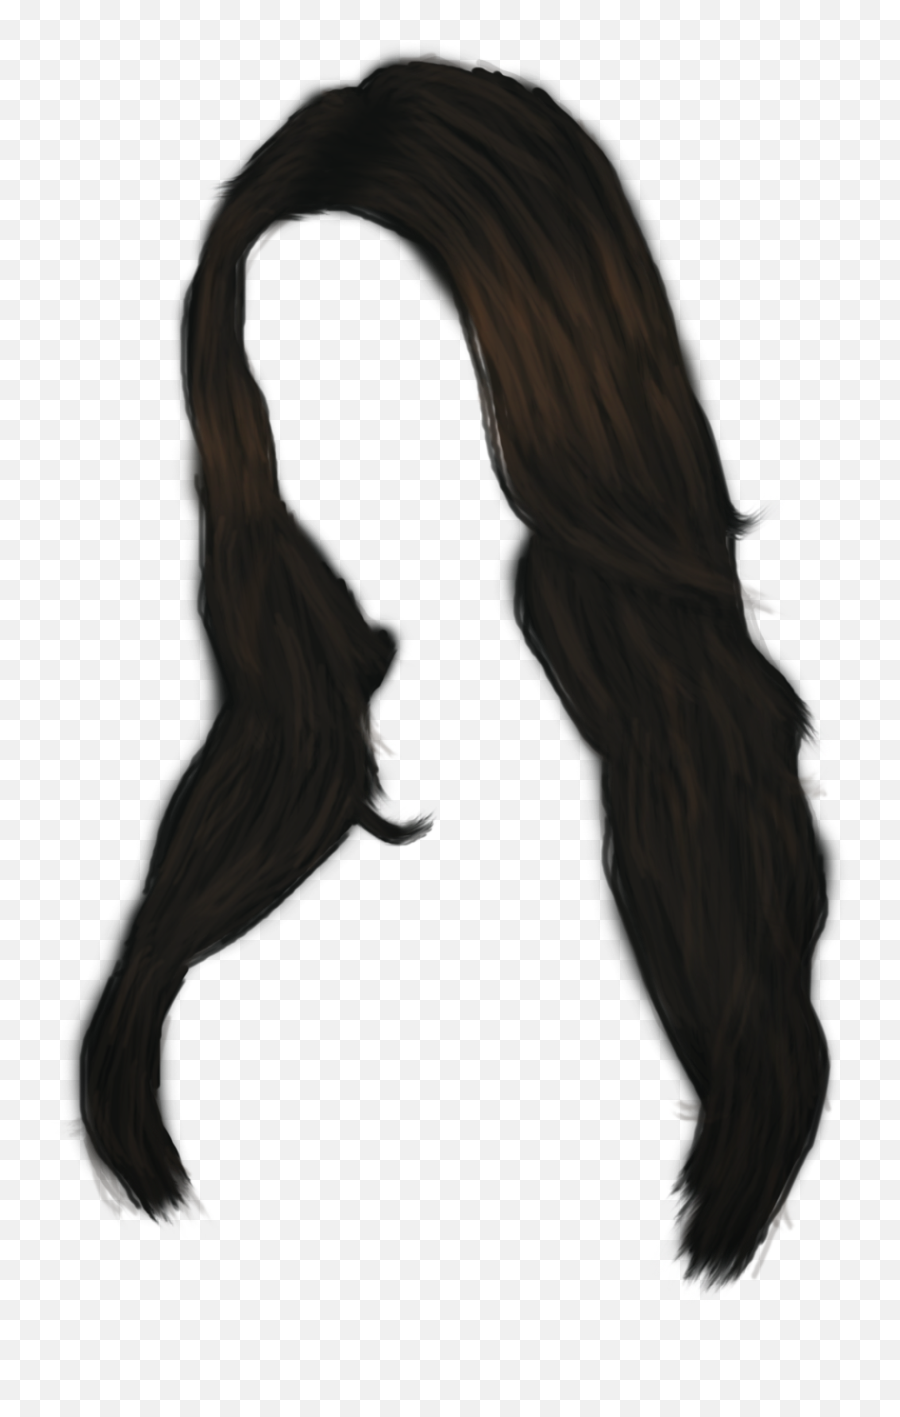 Women Hair Png Image - Long Black Hair Transparent Background Emoji,Black Emoji With Blonde Hair